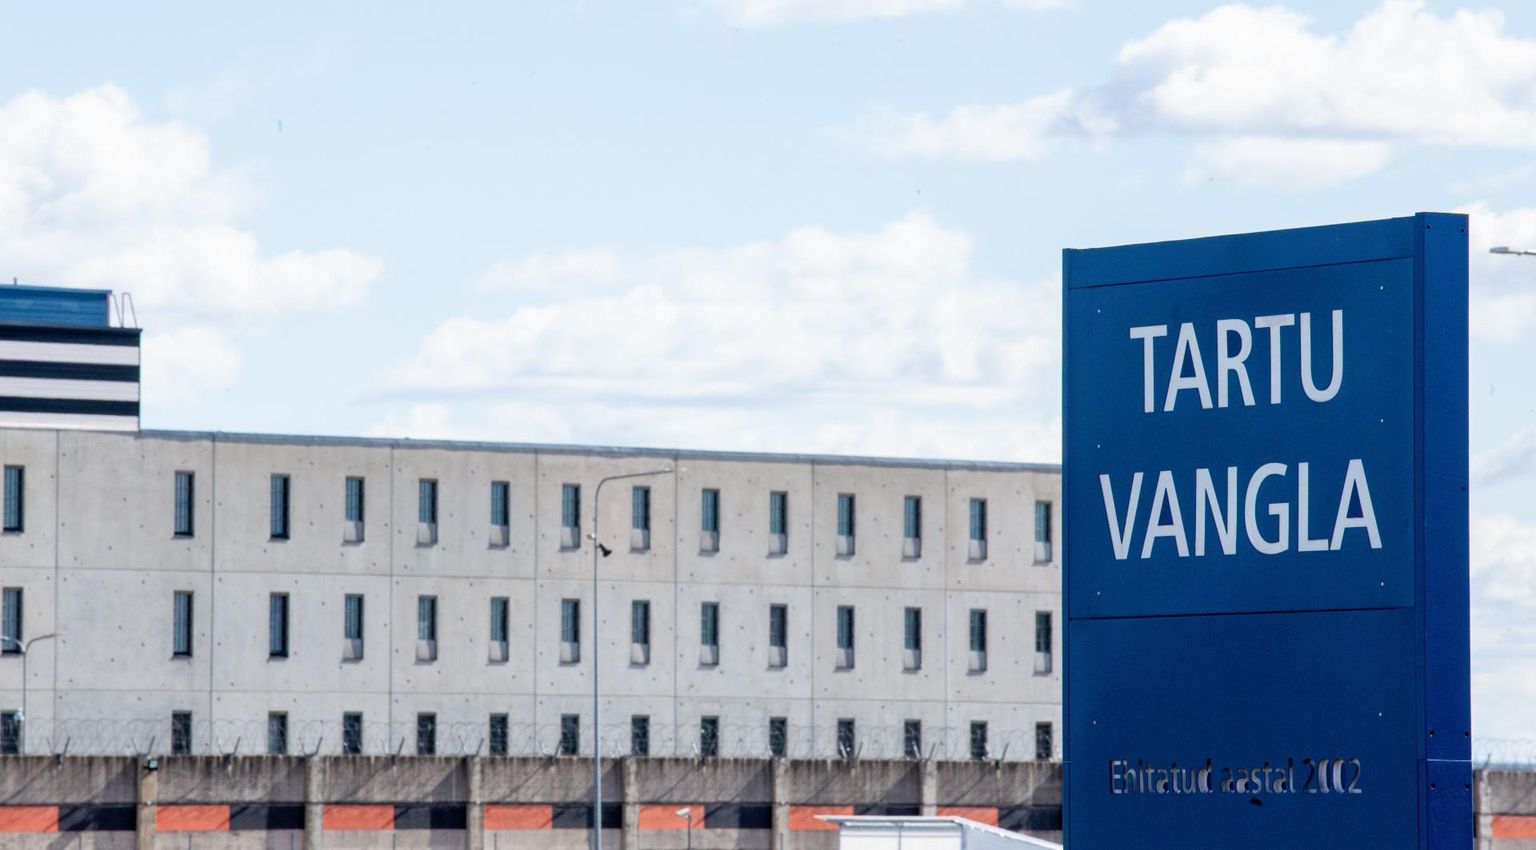 Eelmisel nädalal nakatusid koroonaviirusse ka Tartu vangla töötaja.